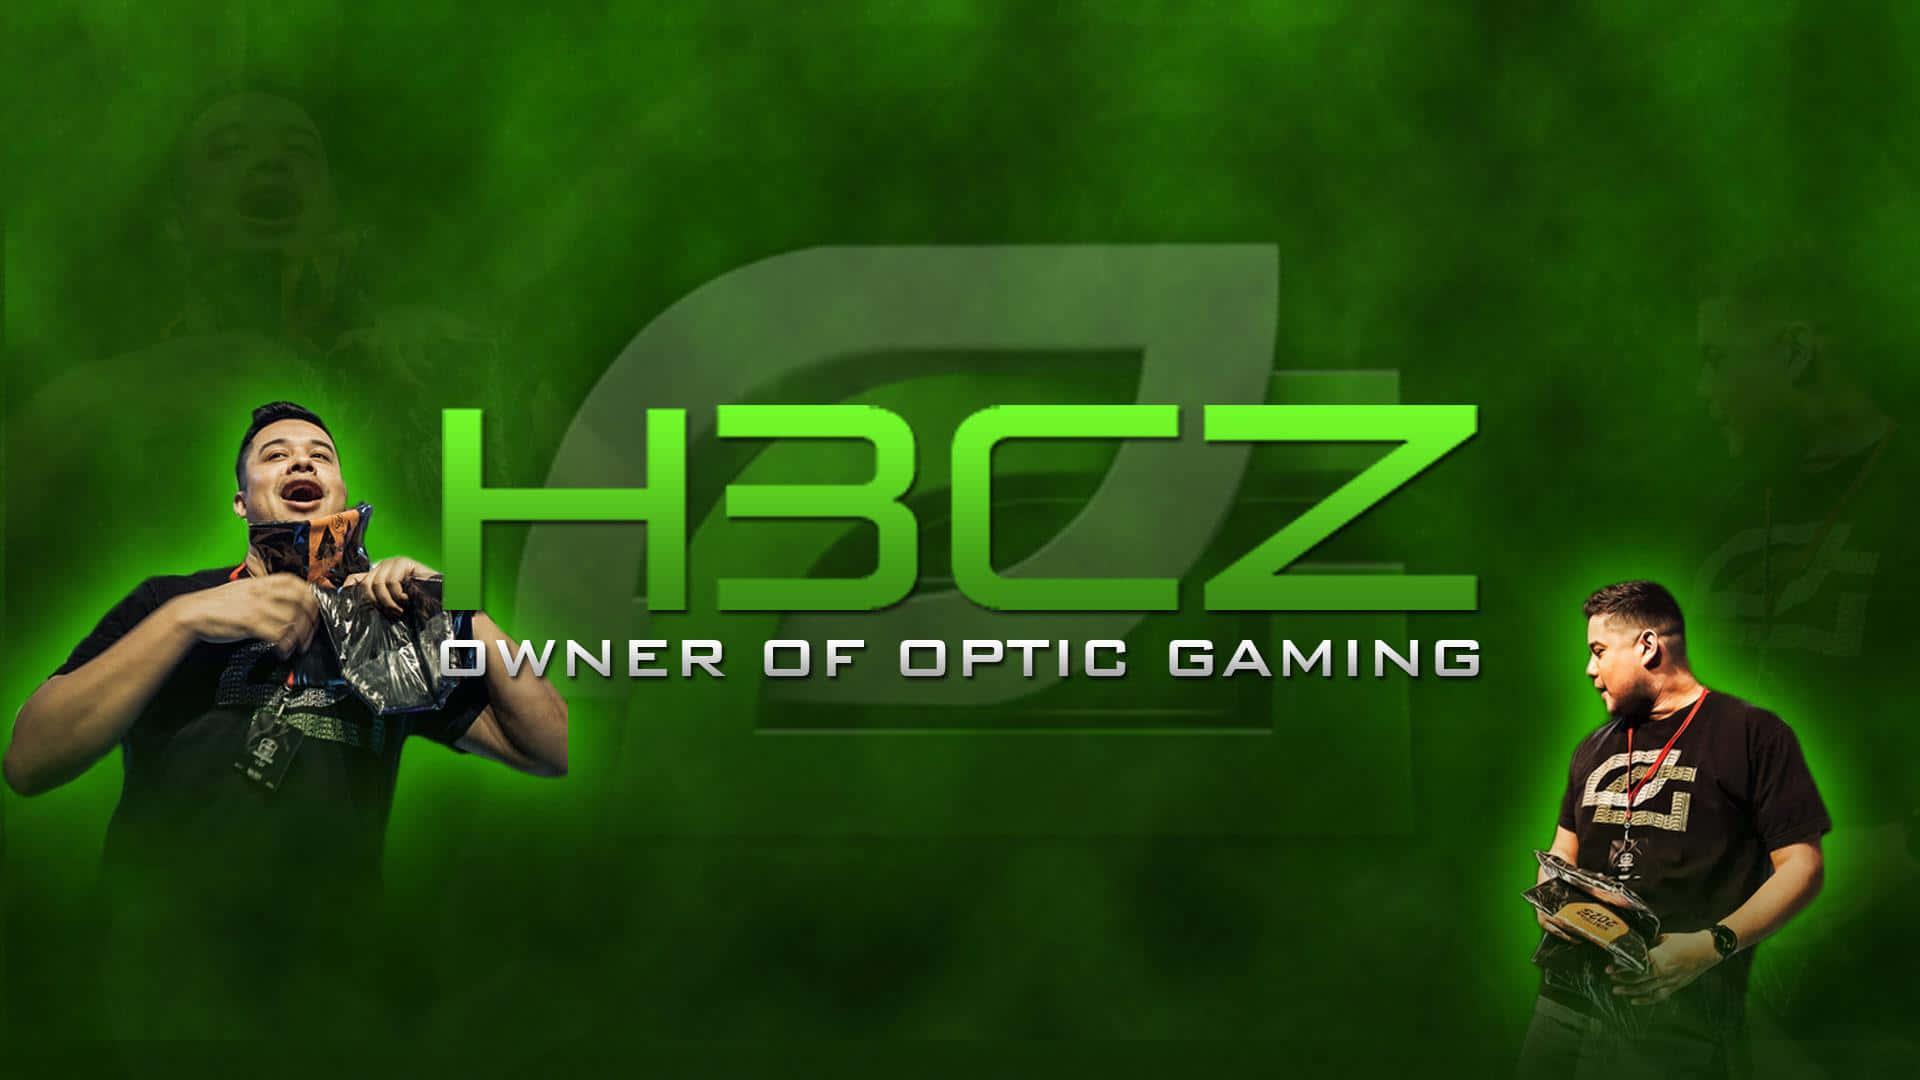 H3 C Z Optic Gaming Owner Wallpaper Wallpaper